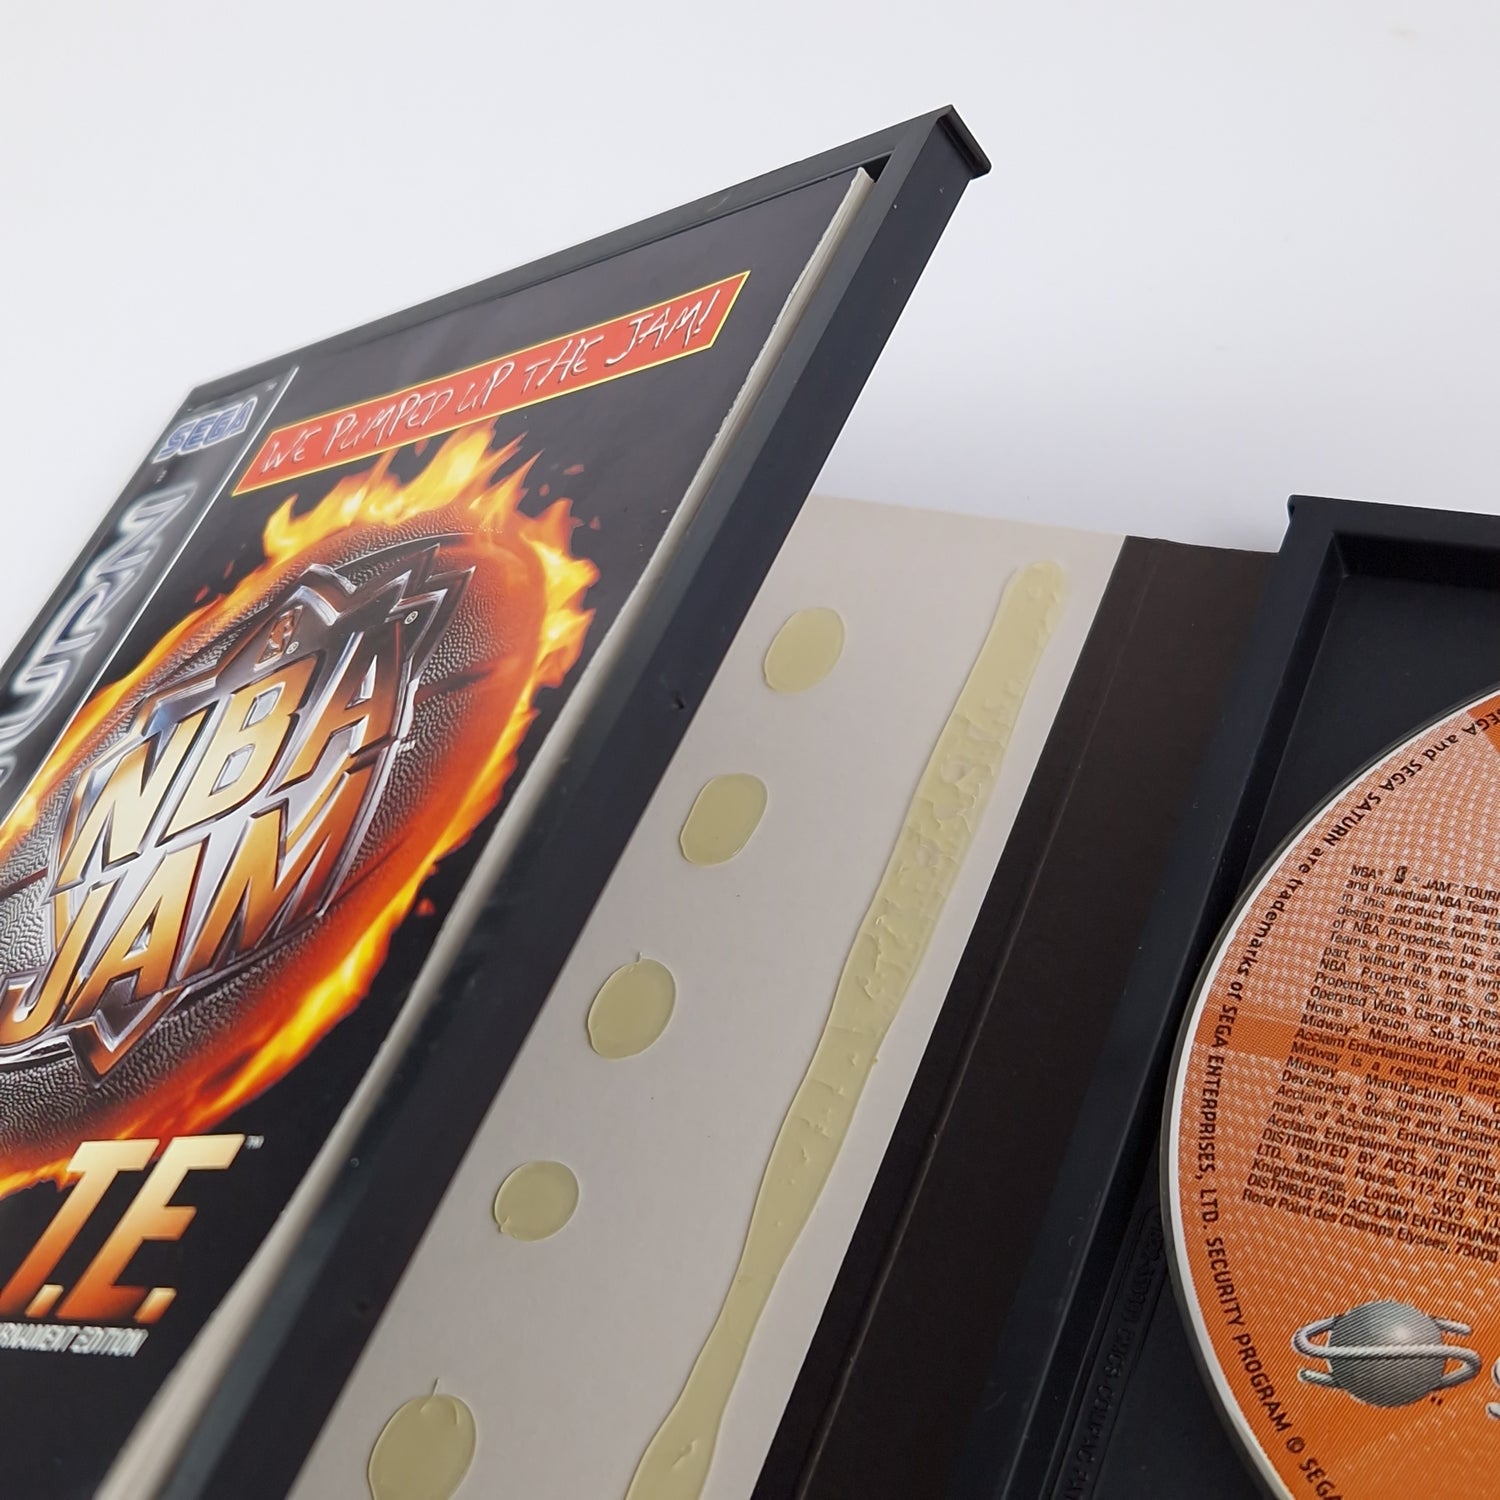 Sega Saturn Game: NBA Jam TE Tournament Edition - Original Packaging & Instructions PAL Disk